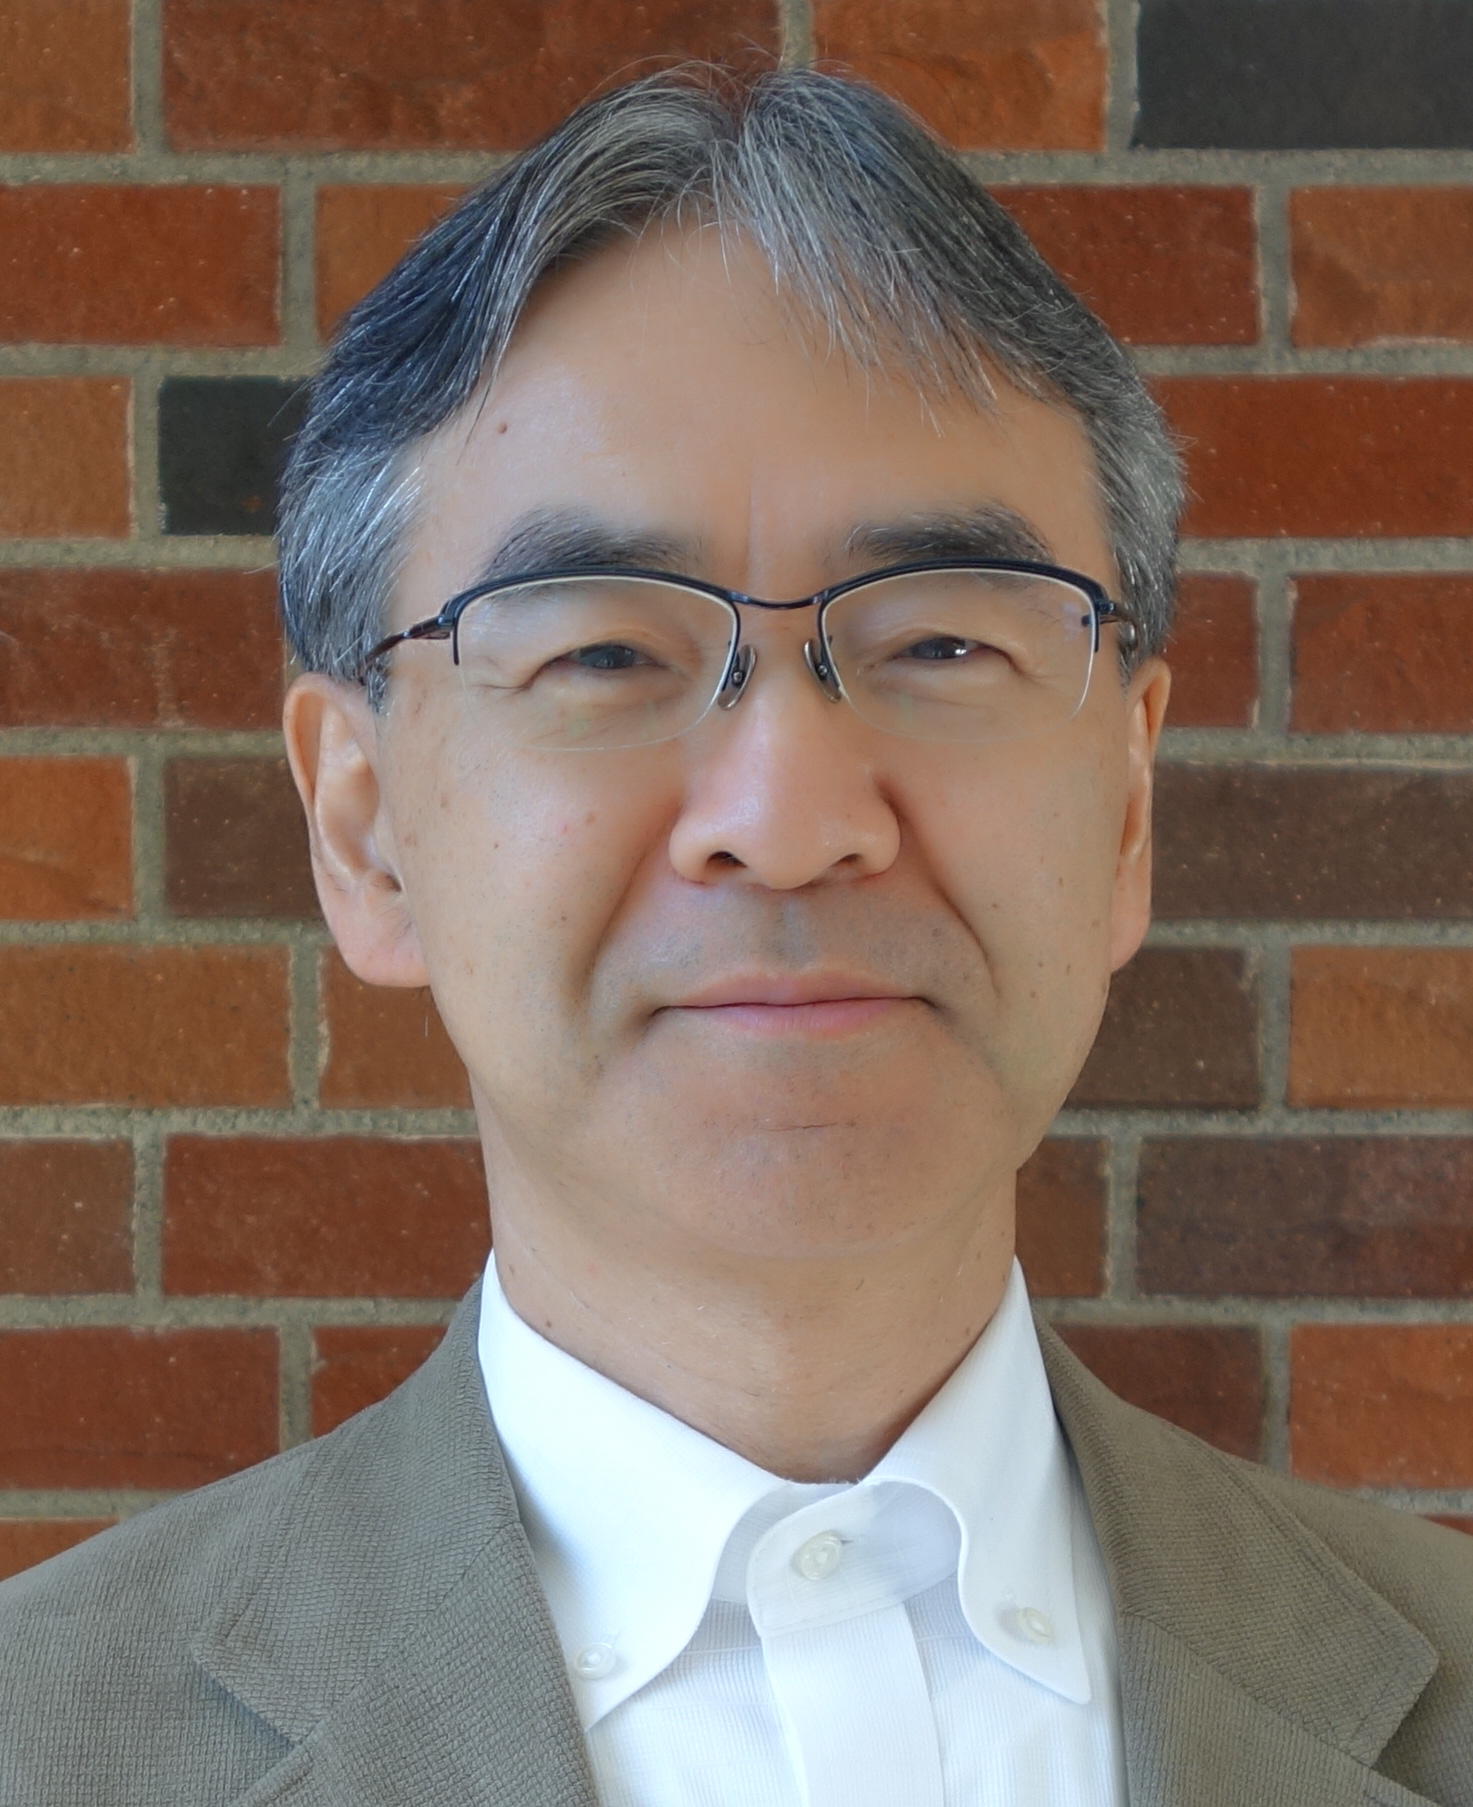 Takashi Suganuma